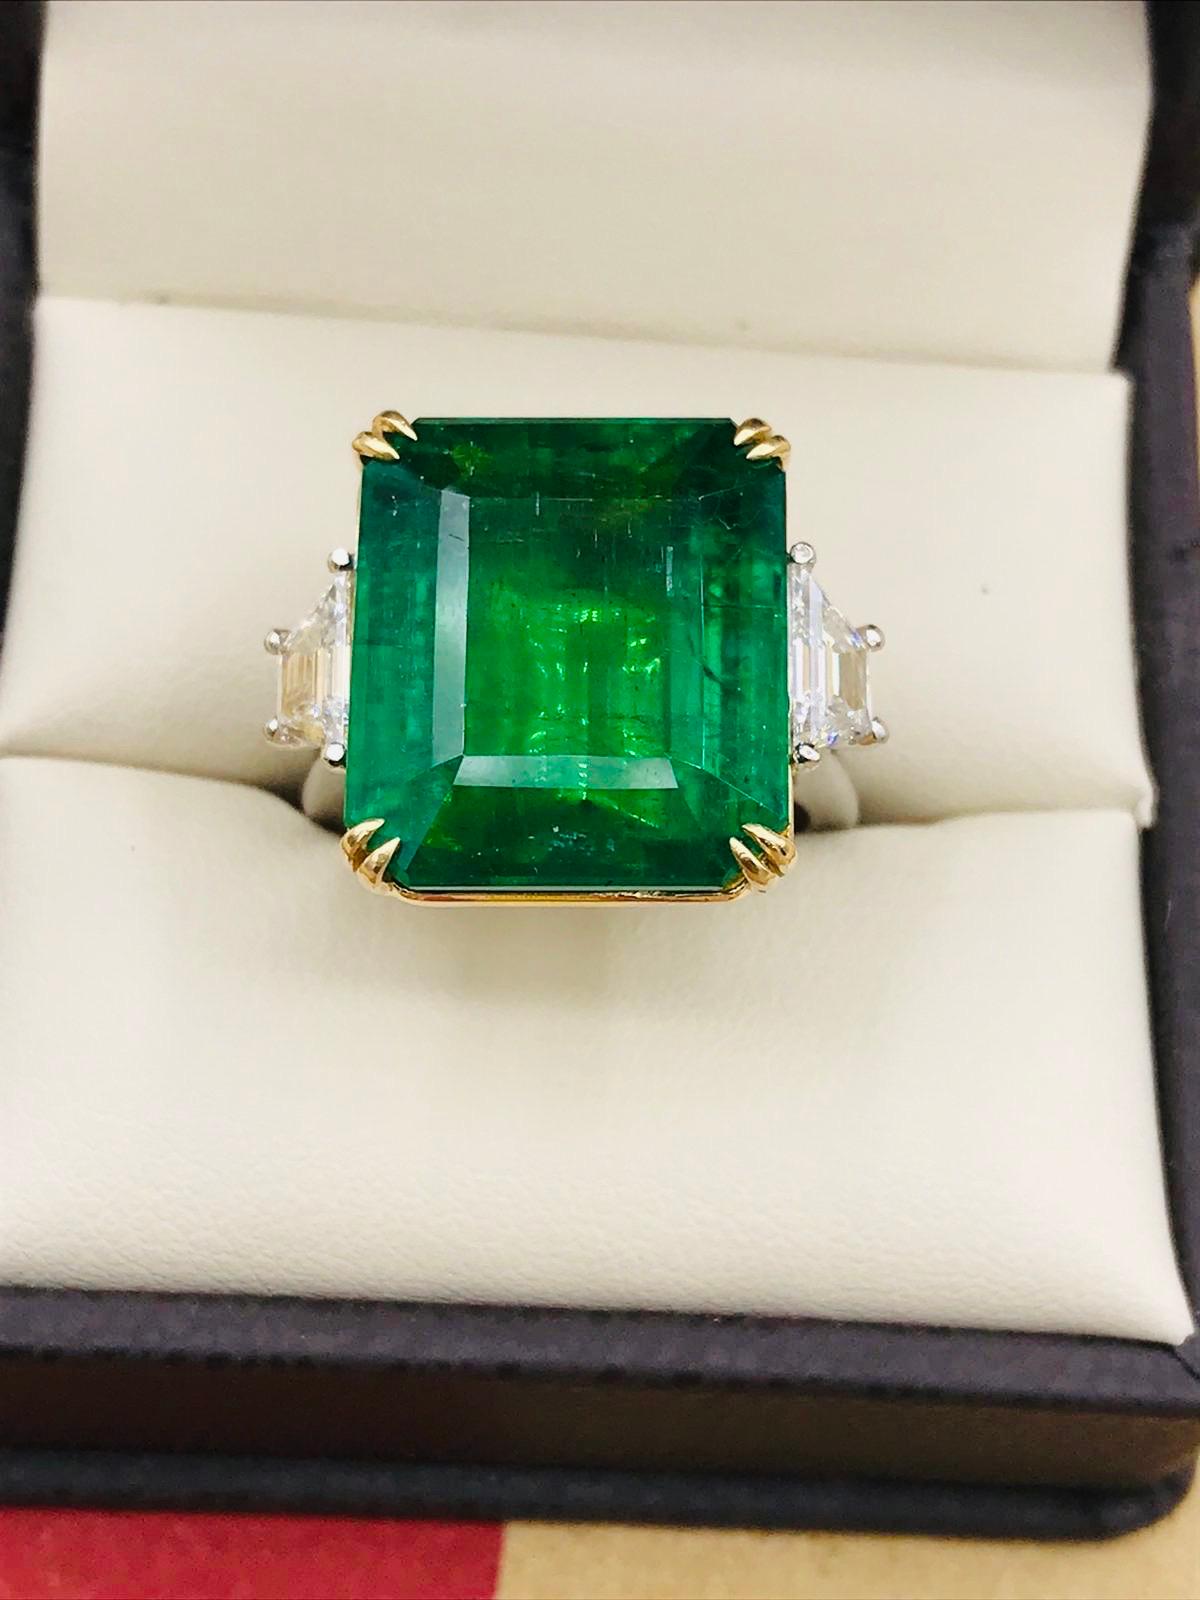 Emilio Jewelry zertifizierte Vivid Green 17,08 Karat Smaragd Diamant Ring
Präsentiert wird ein wunderschöner echter Smaragd mit Smaragdschliff, zertifiziert von C. Dunaigre. Die Farbe des Smaragds ist als Vivid green zertifiziert, die begehrteste